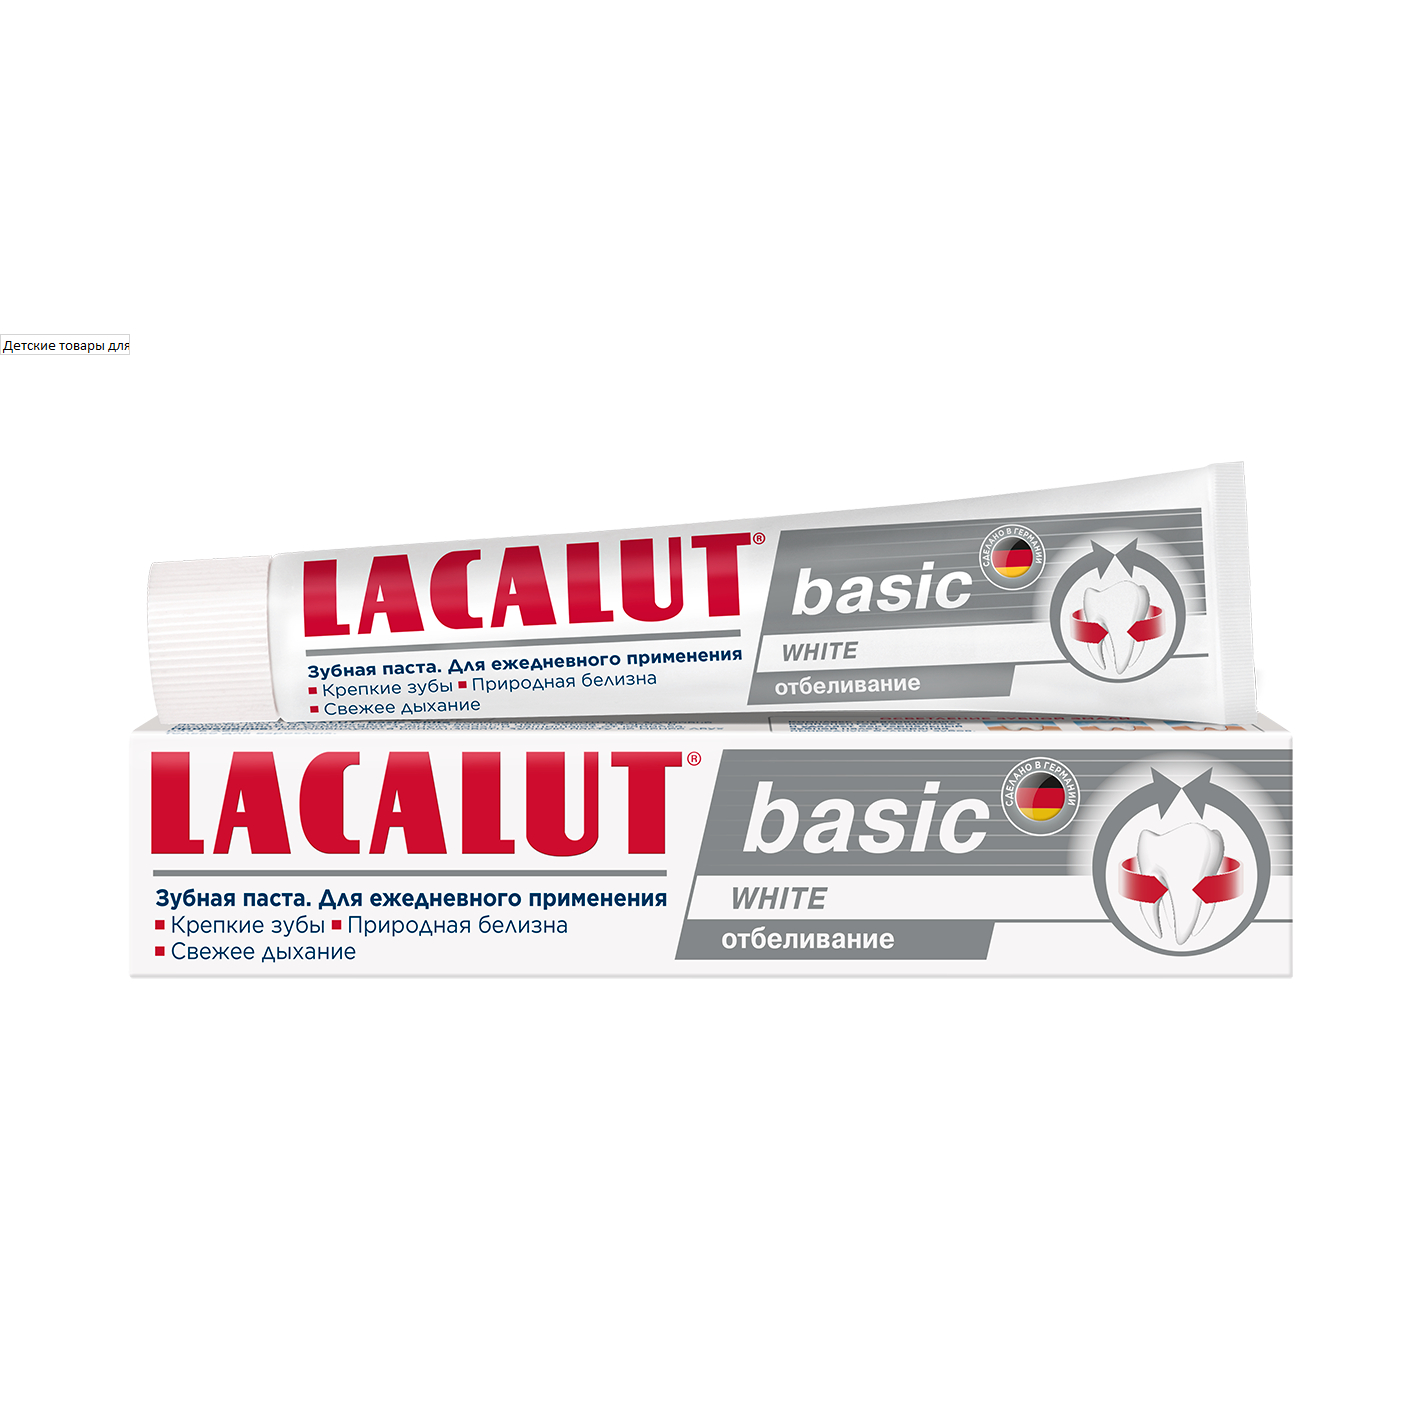 Зубная паста Lacalut basic white 75 мл зубная паста lacalut white 75 мл